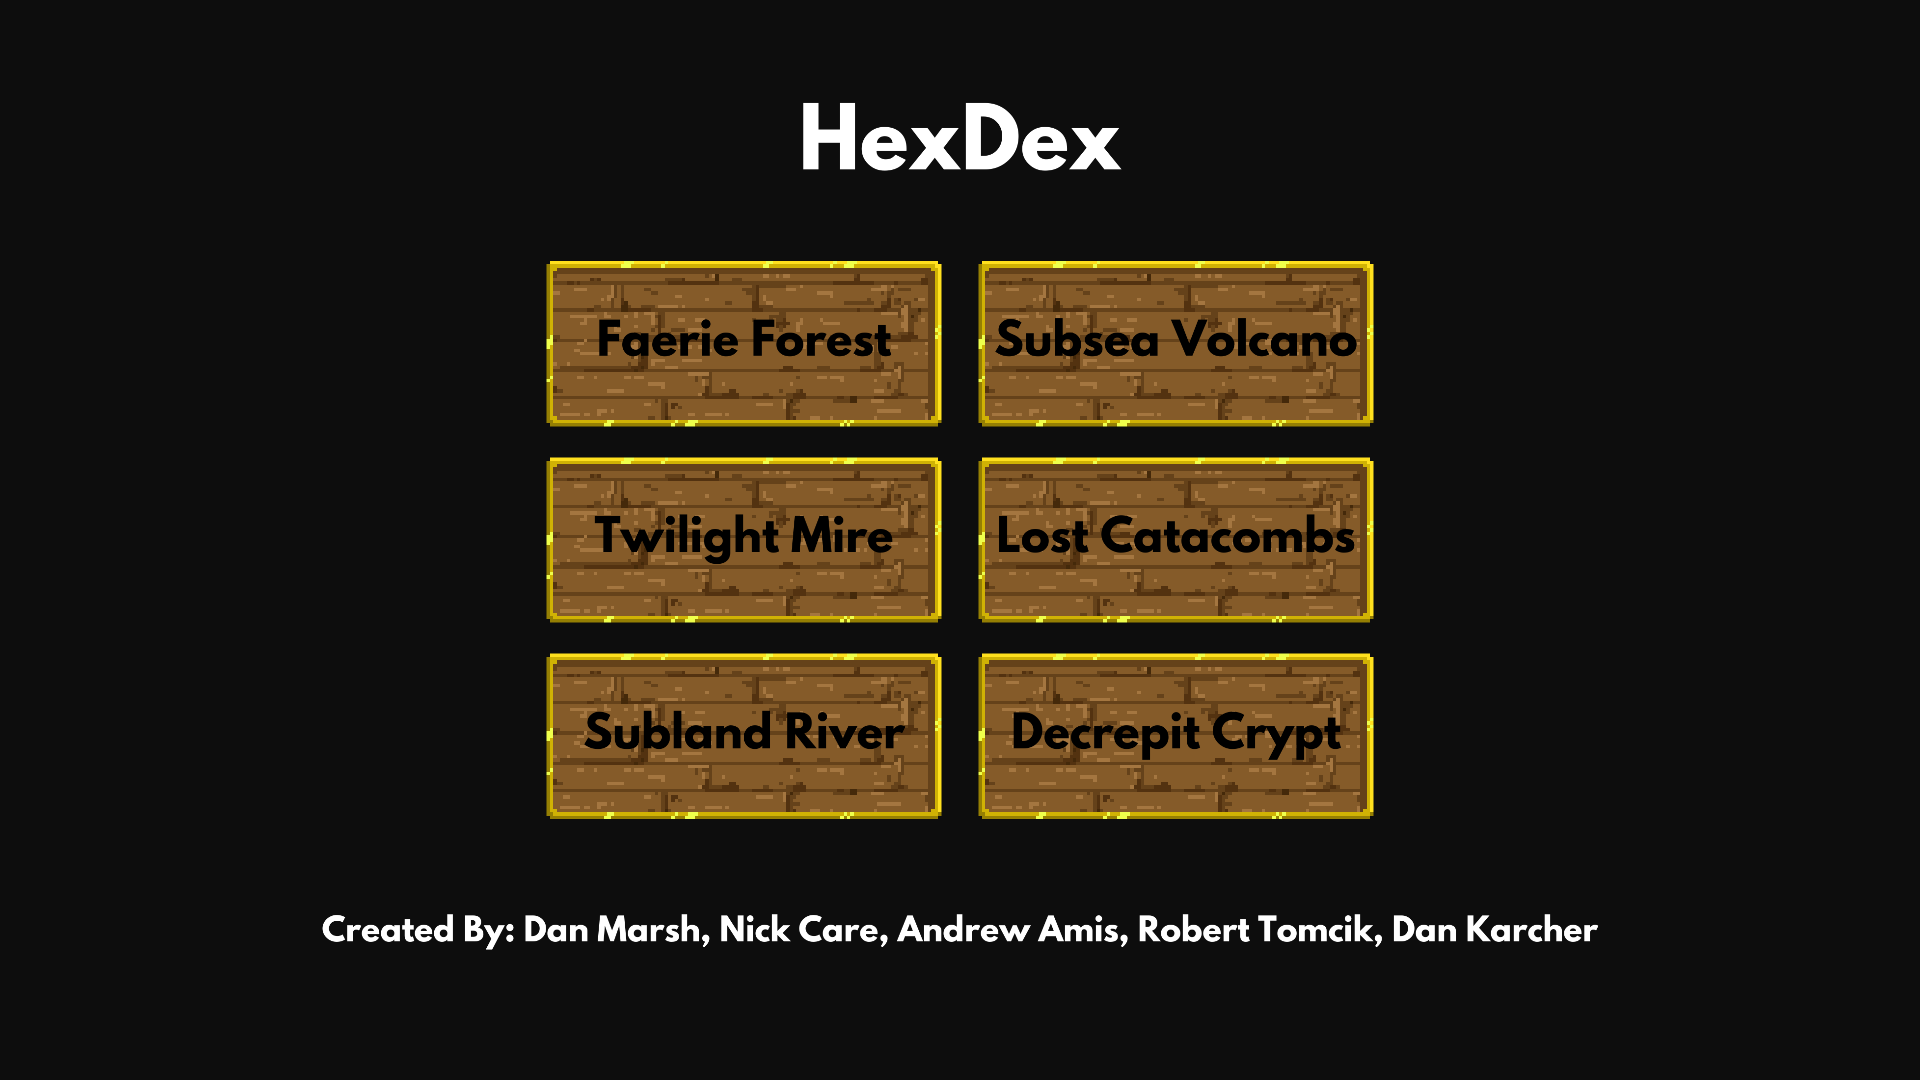 Hexdecks' main menu